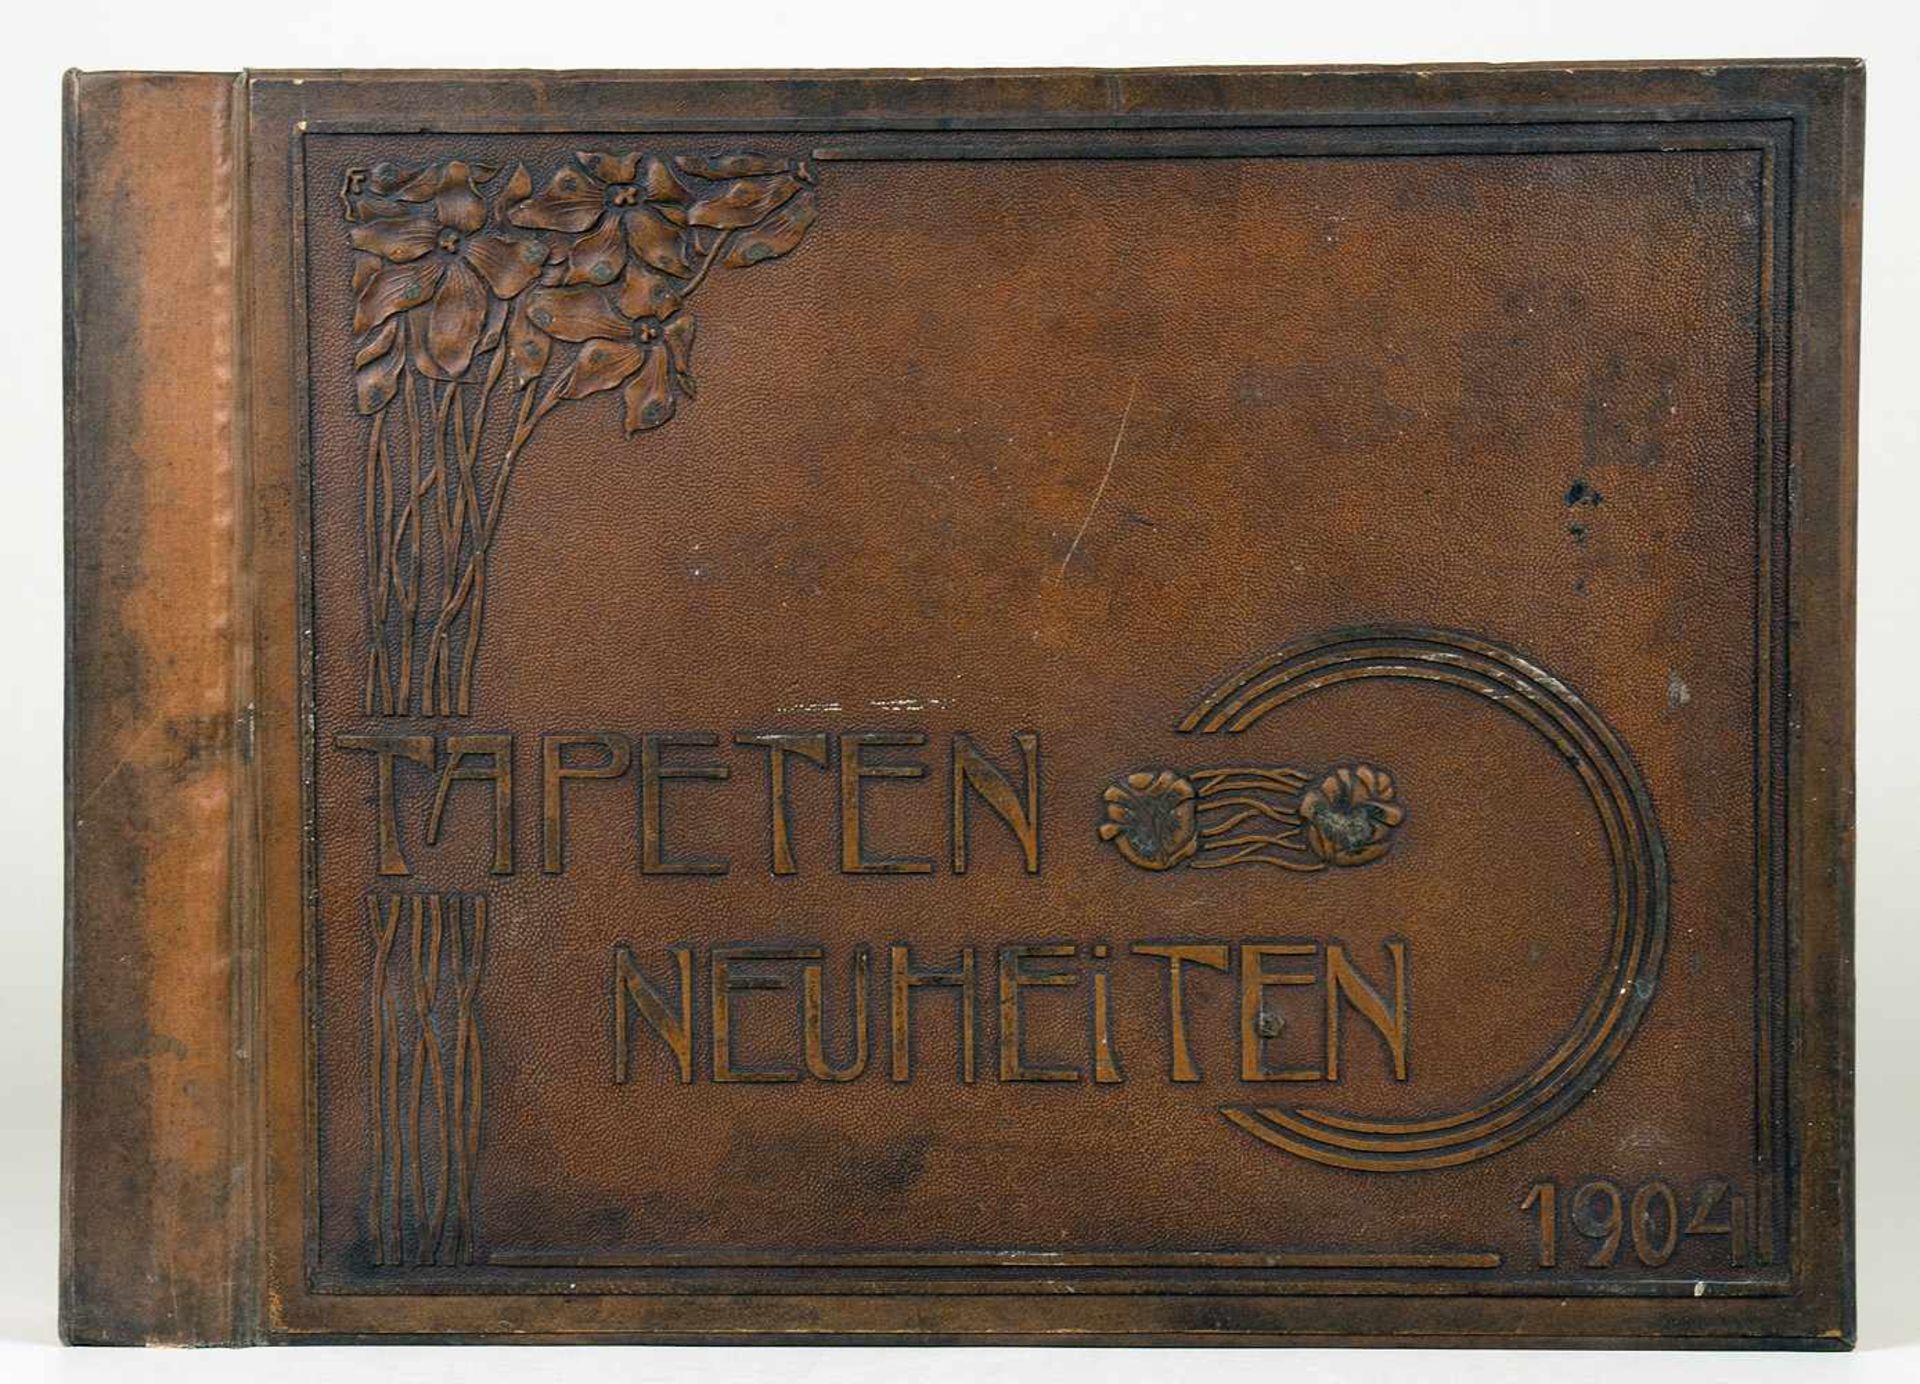 Tapeten-Neuheiten 1904. Tapetenmusterbuch der Firma Jerk & Schuschitz, Wien. Ca. 240 Originalmuster,